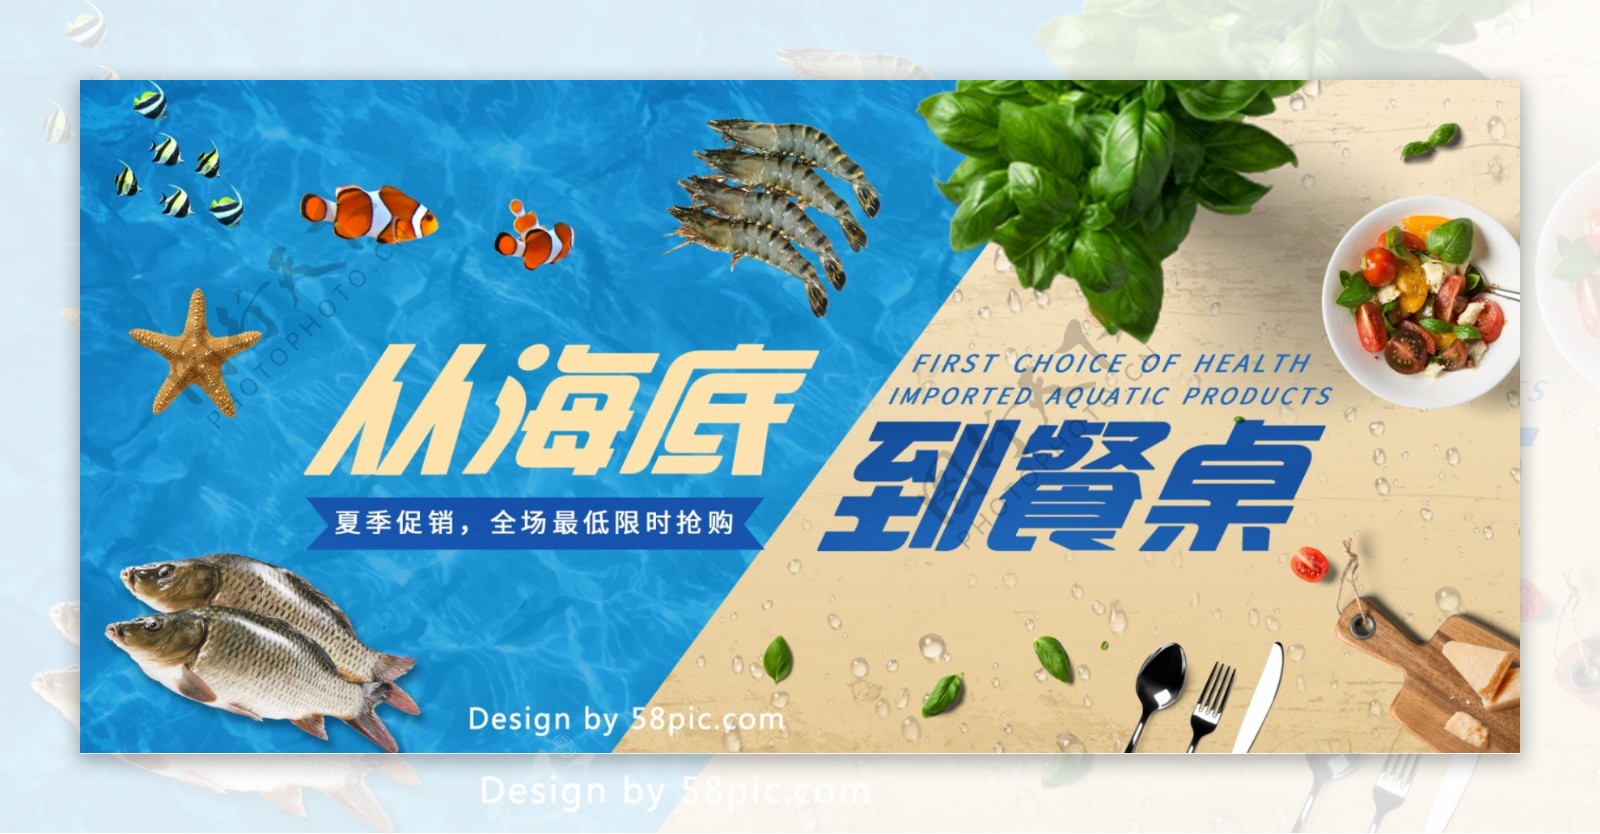 电商小清新夏季促销食品茶饮海鲜海报模板